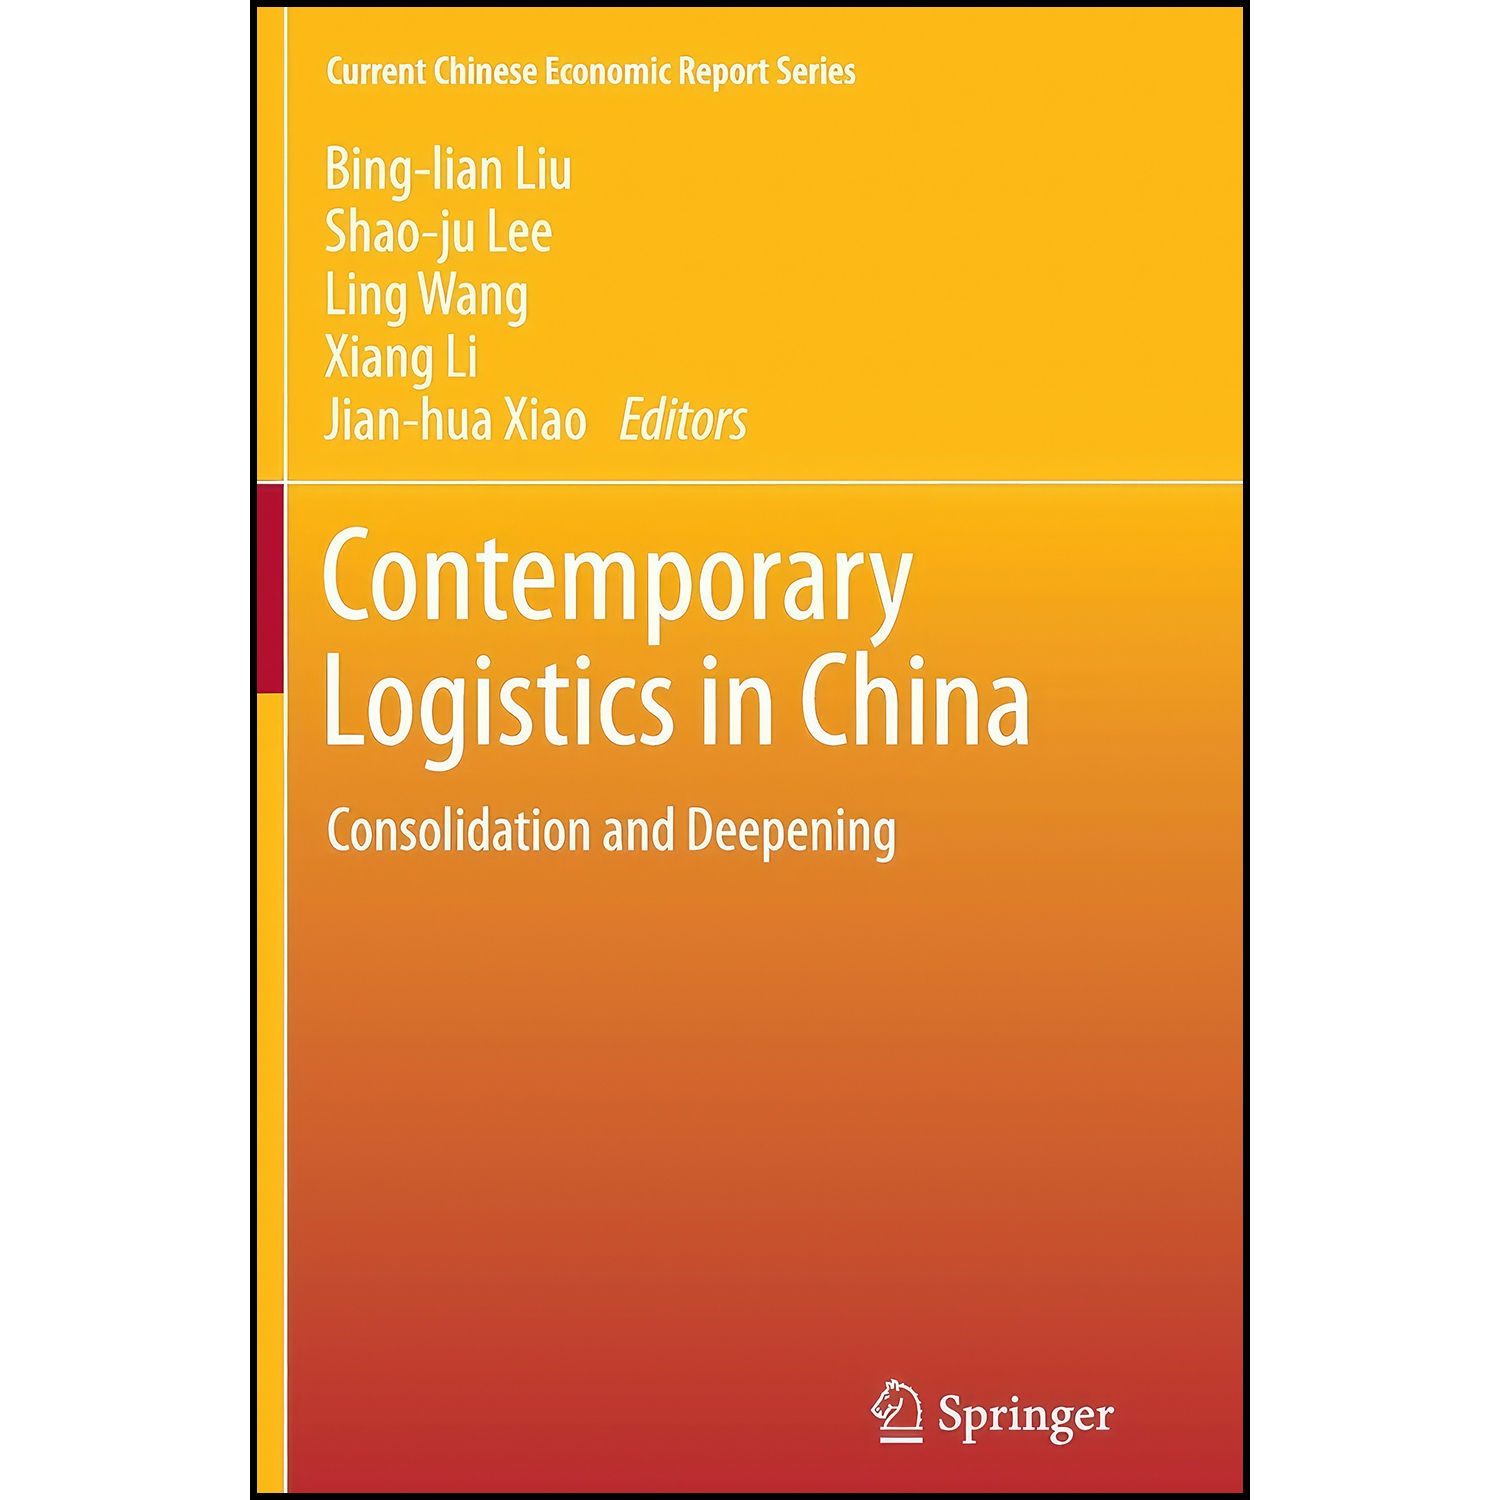 کتاب Contemporary Logistics in China اثر جمعي از نويسندگان انتشارات بله